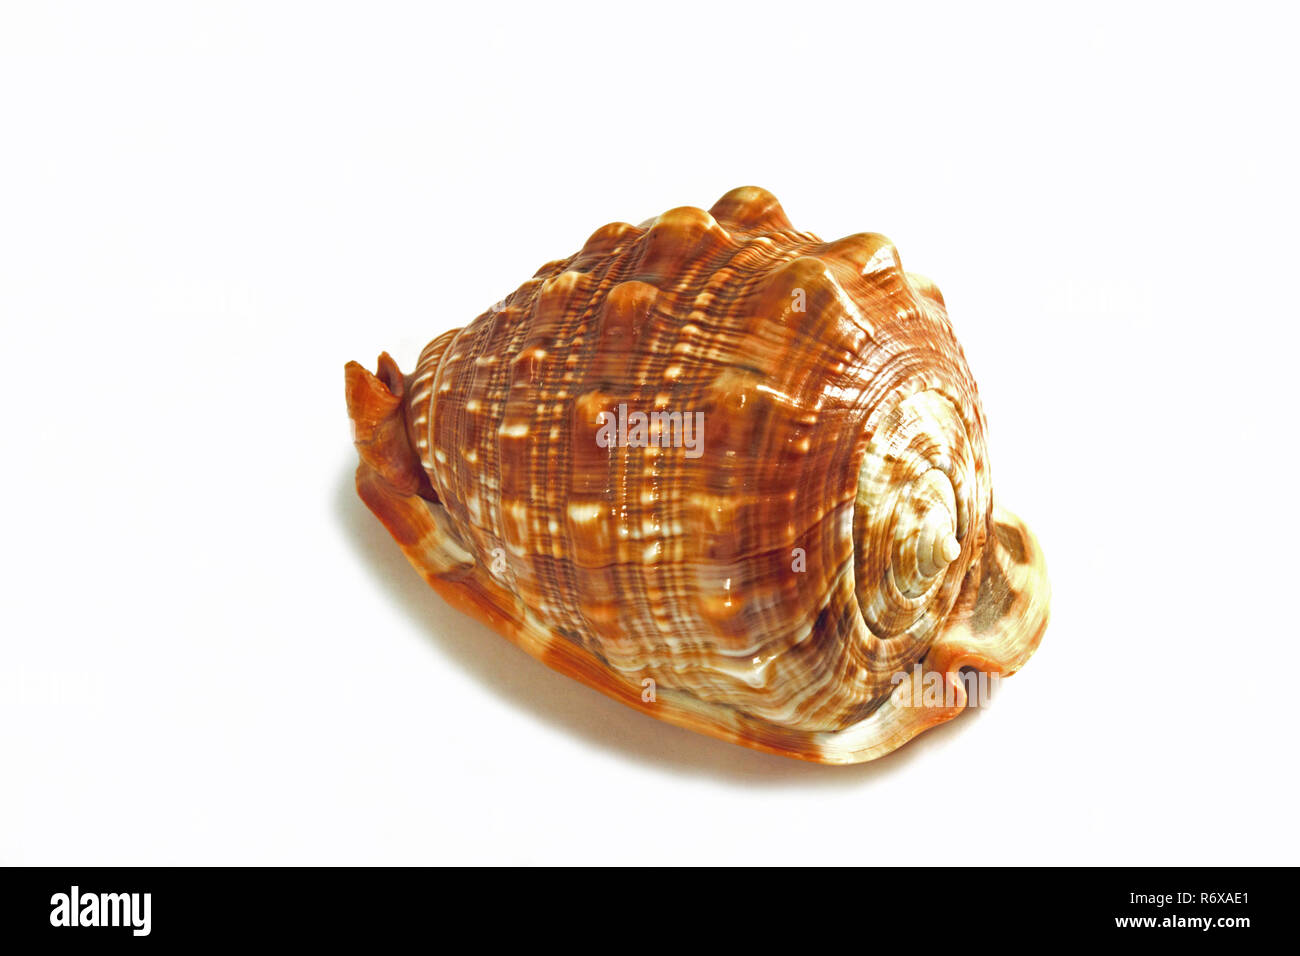 Die gehörnten Helm (Cassis cornuta) ist einer der grössten Meeresschnecken. Dieser 30 cm Shell wurde in der Indian Pacific gefunden. Isolierte studio Foto auf w Stockfoto